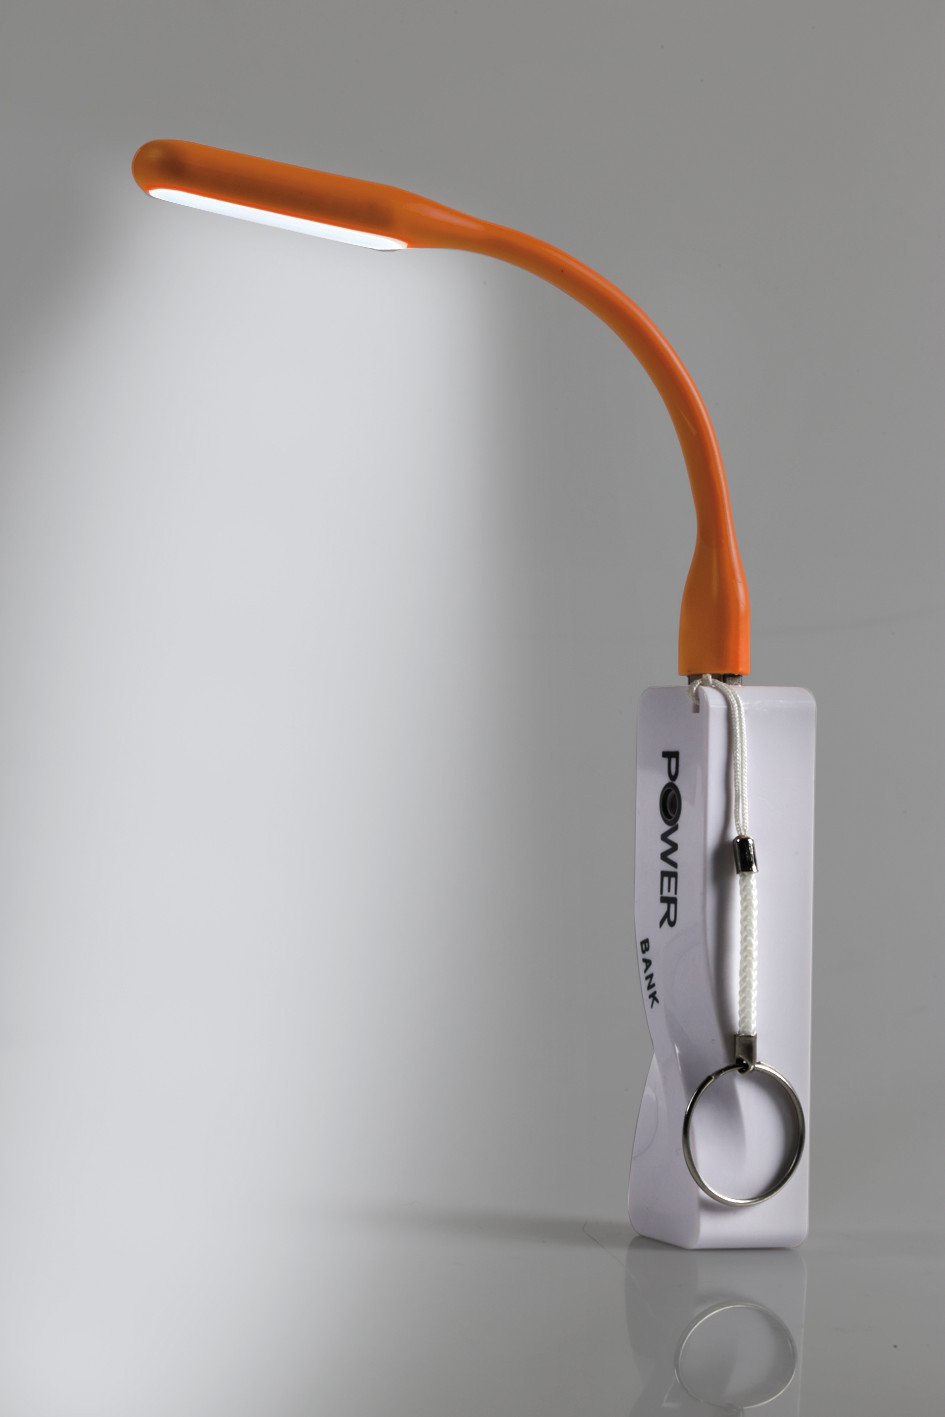 COB LED-es flexibilis Lámpa 5V USB thumb